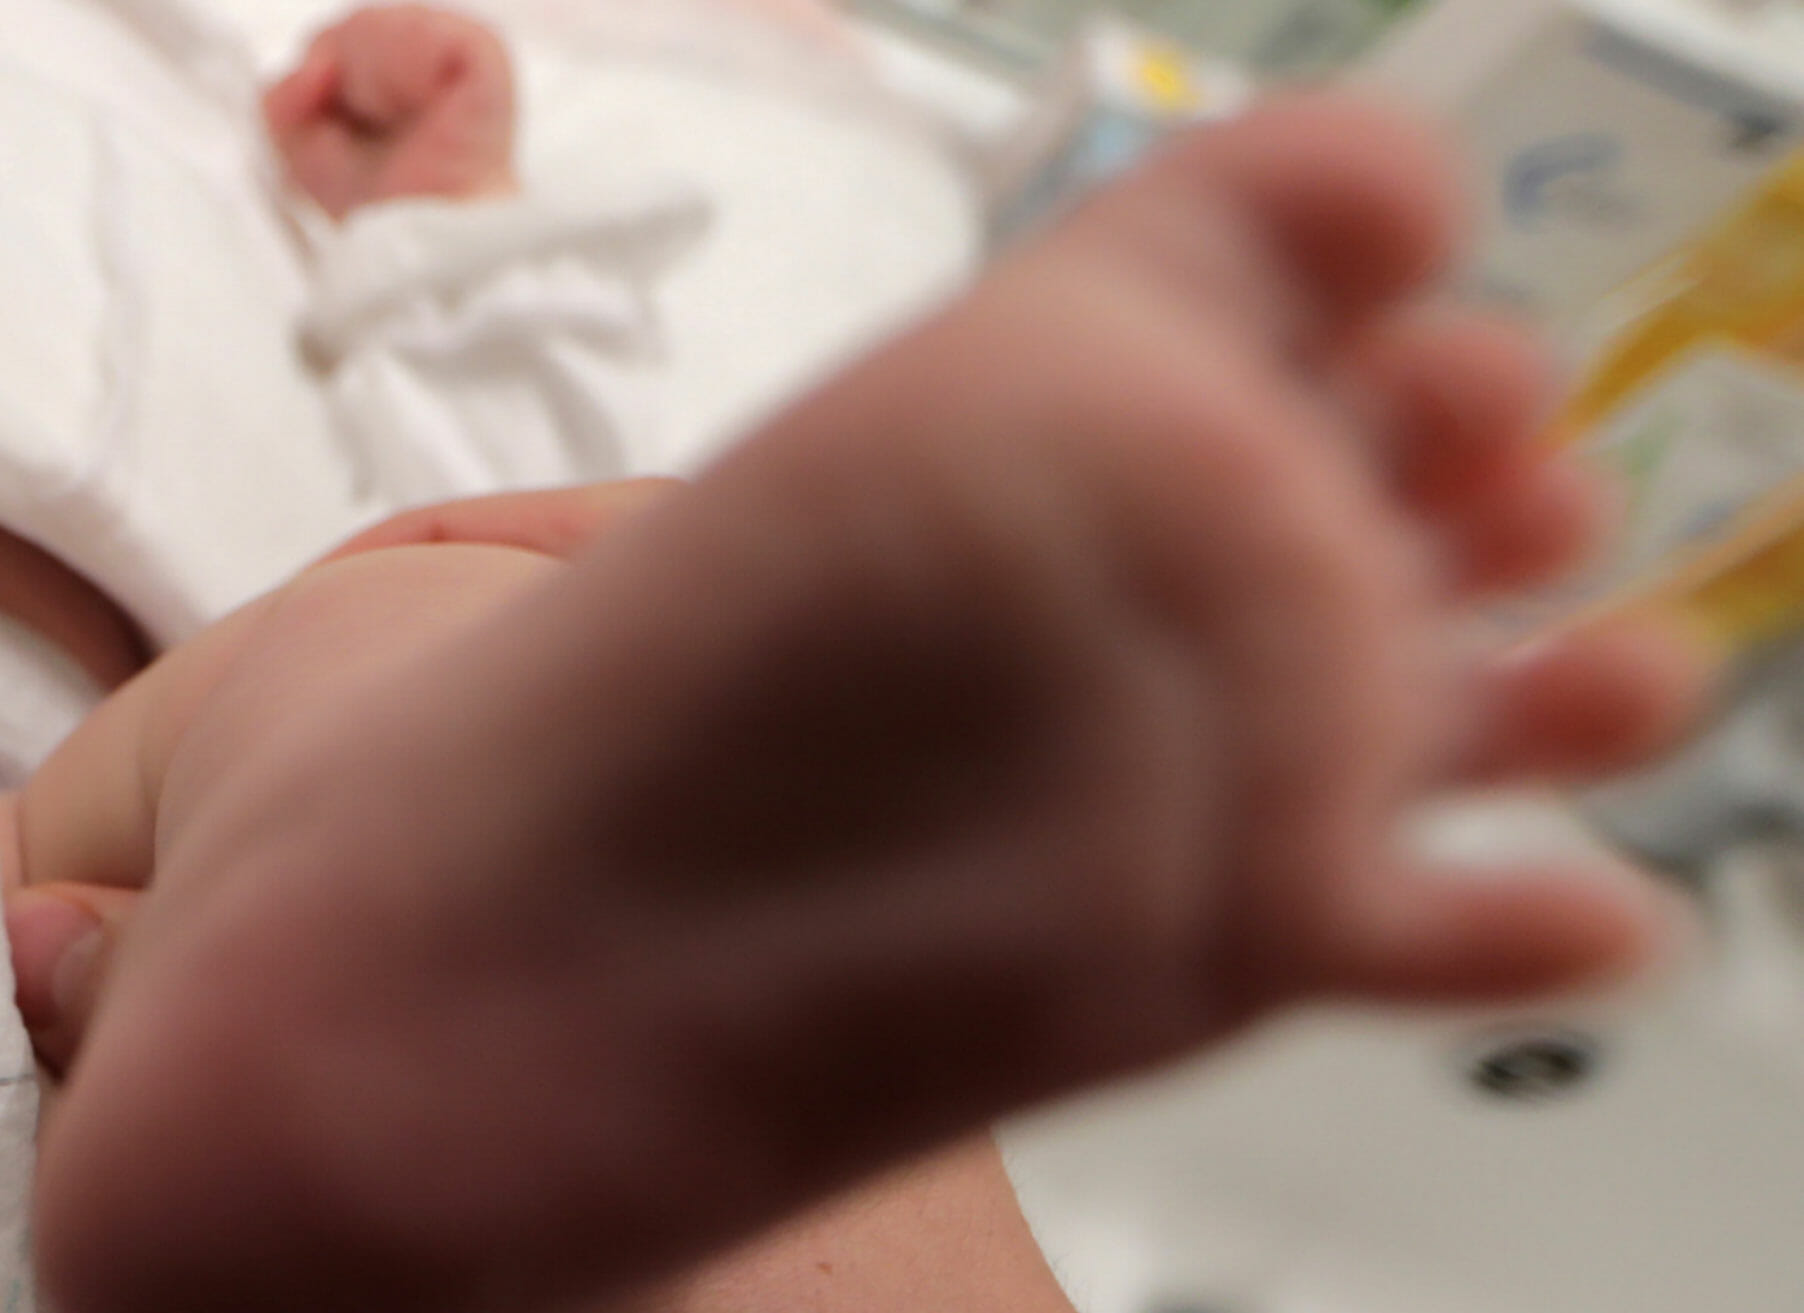 Βόλος: Δήλωσε τη γέννηση του εγγονού του 11 μέρες μετά για να πάρει επίδομα